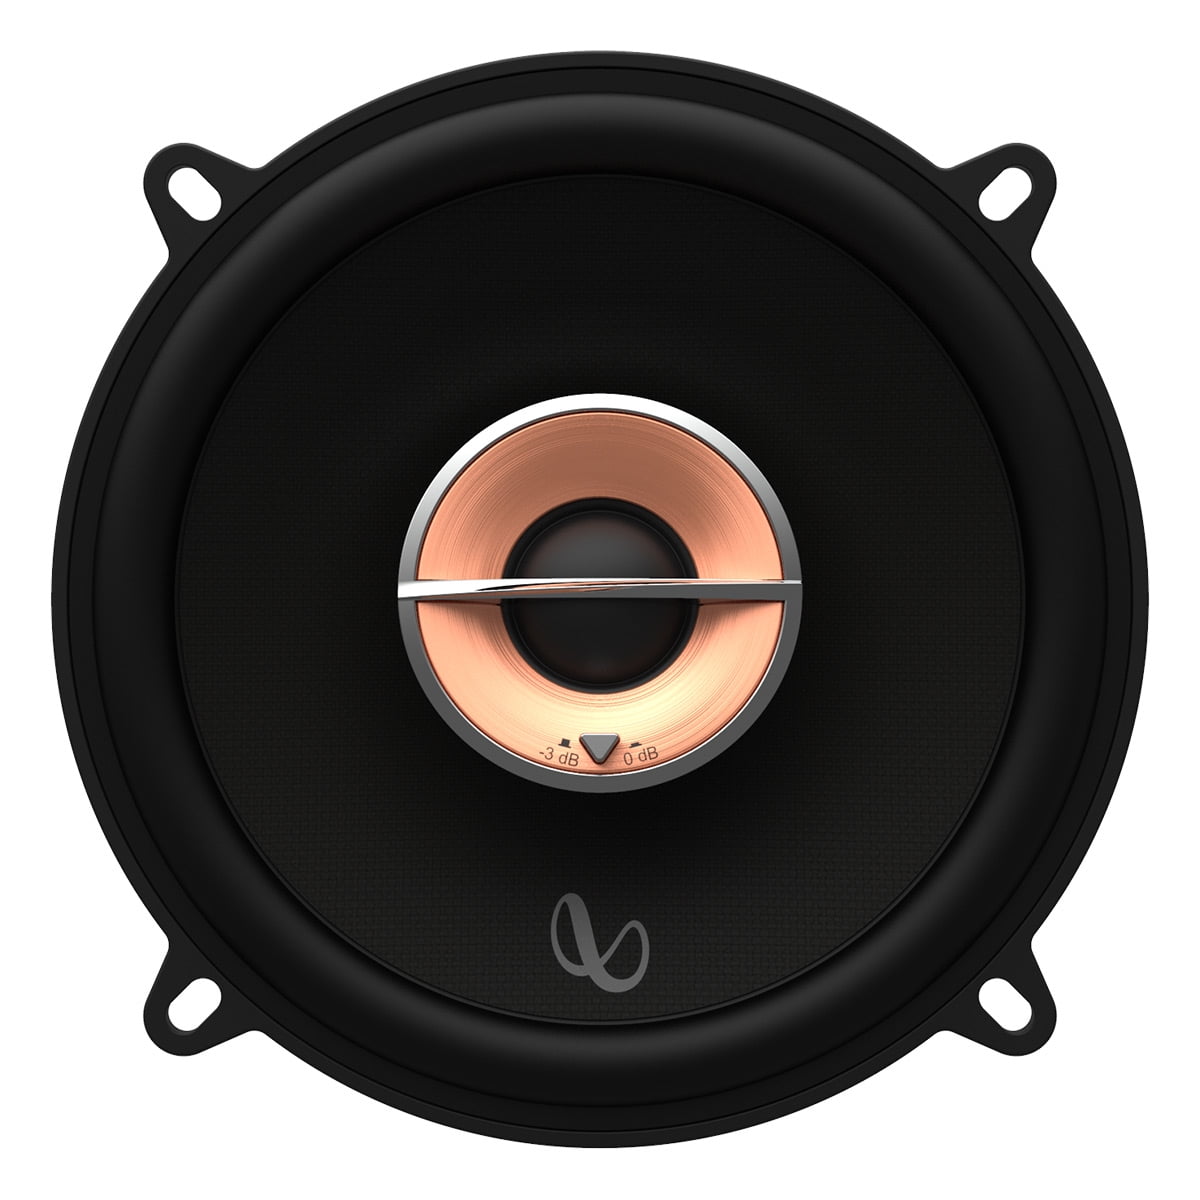 Infinity Kappa 53XF 5-1/4" (133mm) Two-Way Car Speaker - Pair